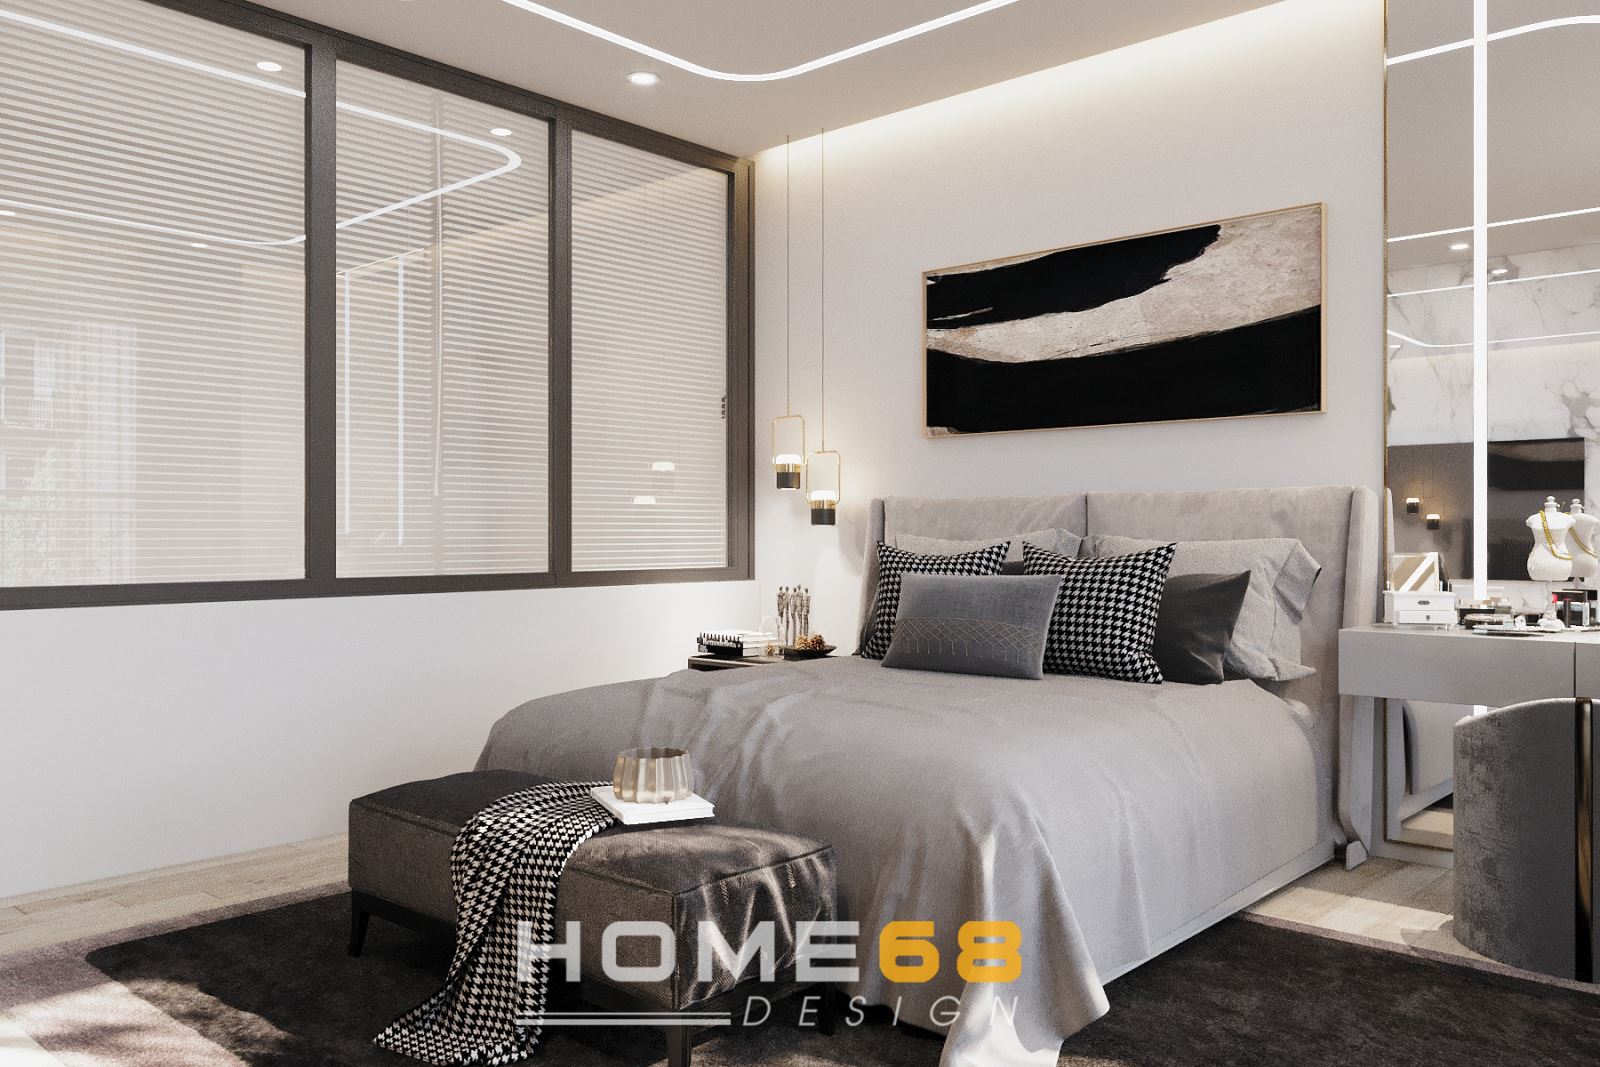 Thiết kế nội thất phòng ngủ master hiện đại, tinh tế- HOME68